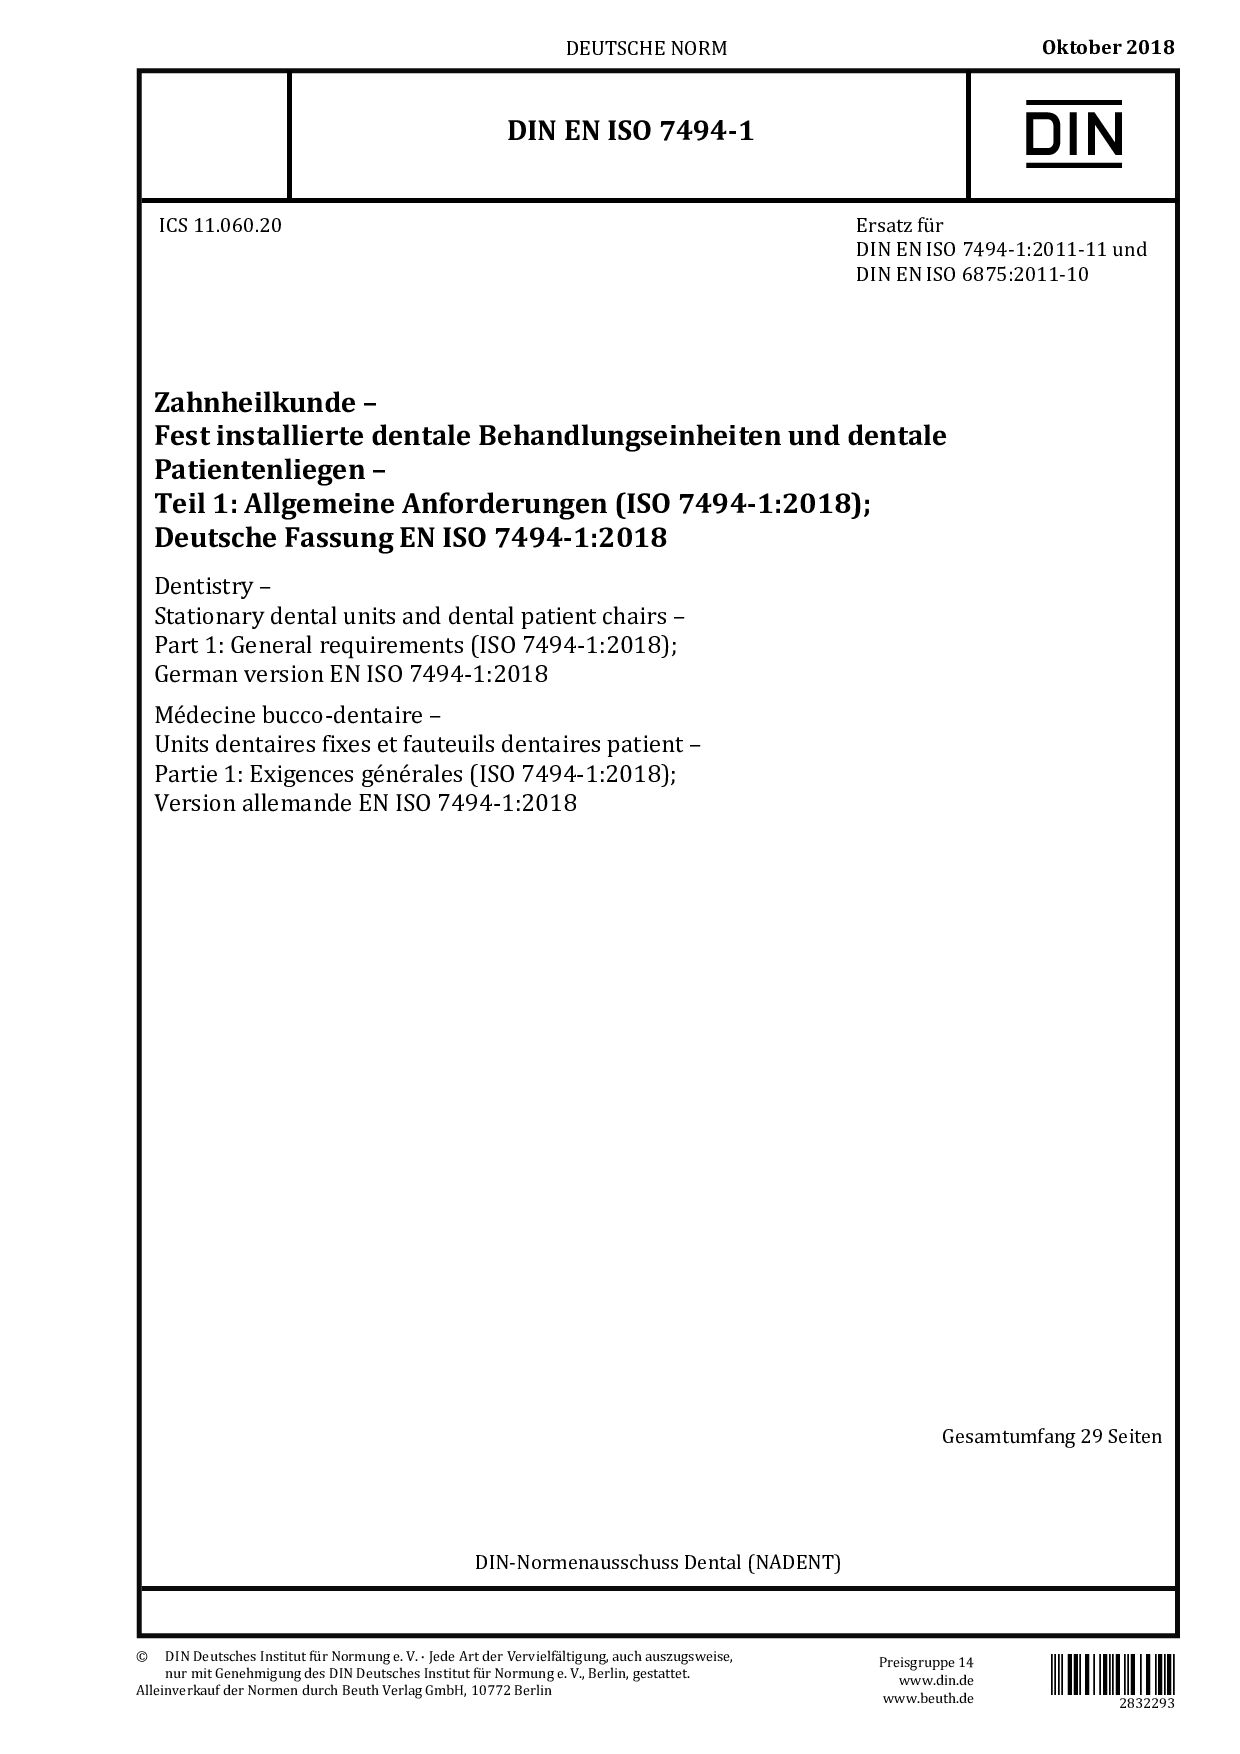 DIN EN ISO 7494-1:2018封面图